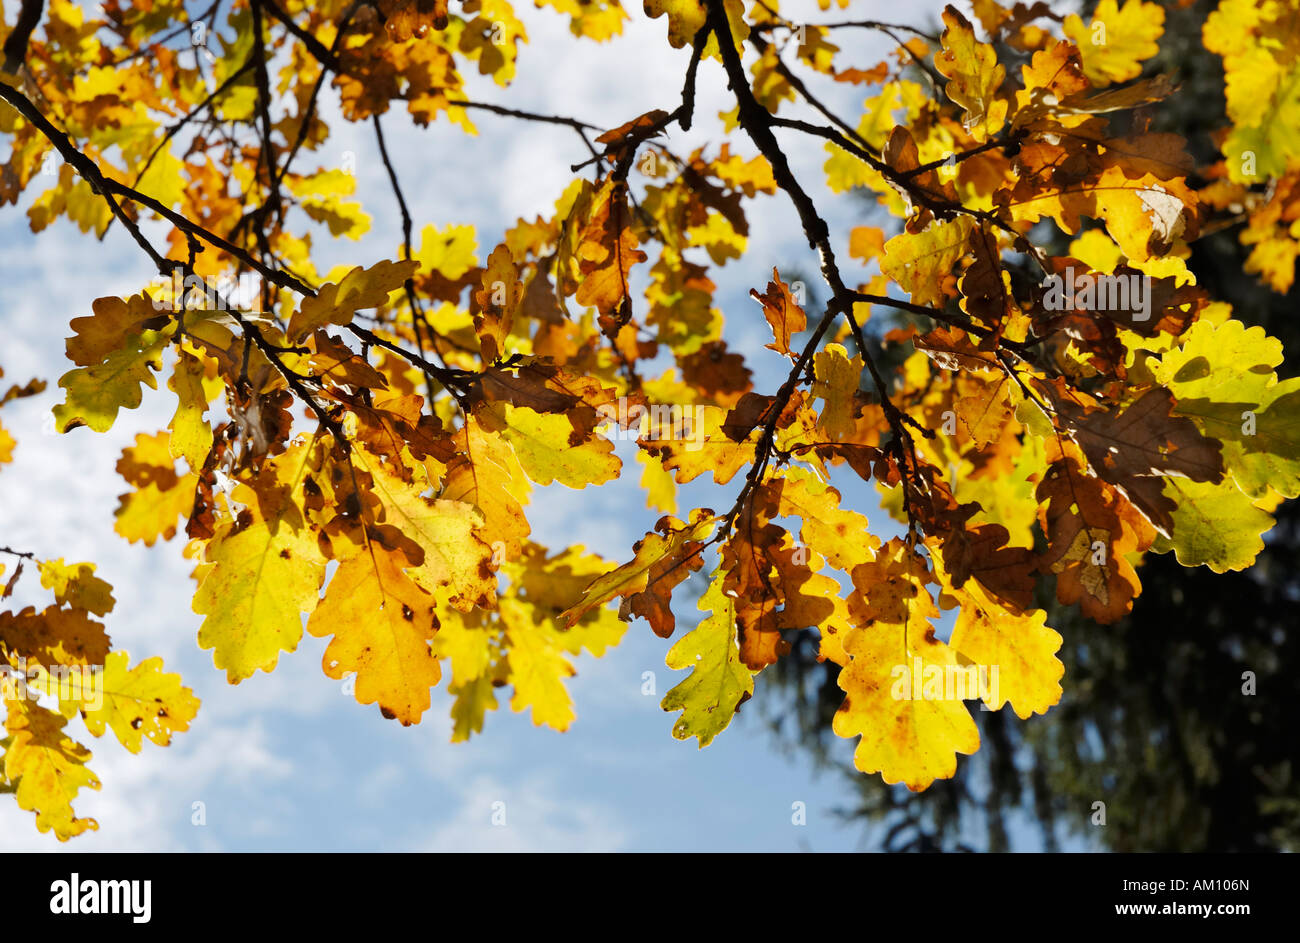 Aux couleurs automnales, les feuilles de chêne Quercus robur fagaceae Banque D'Images